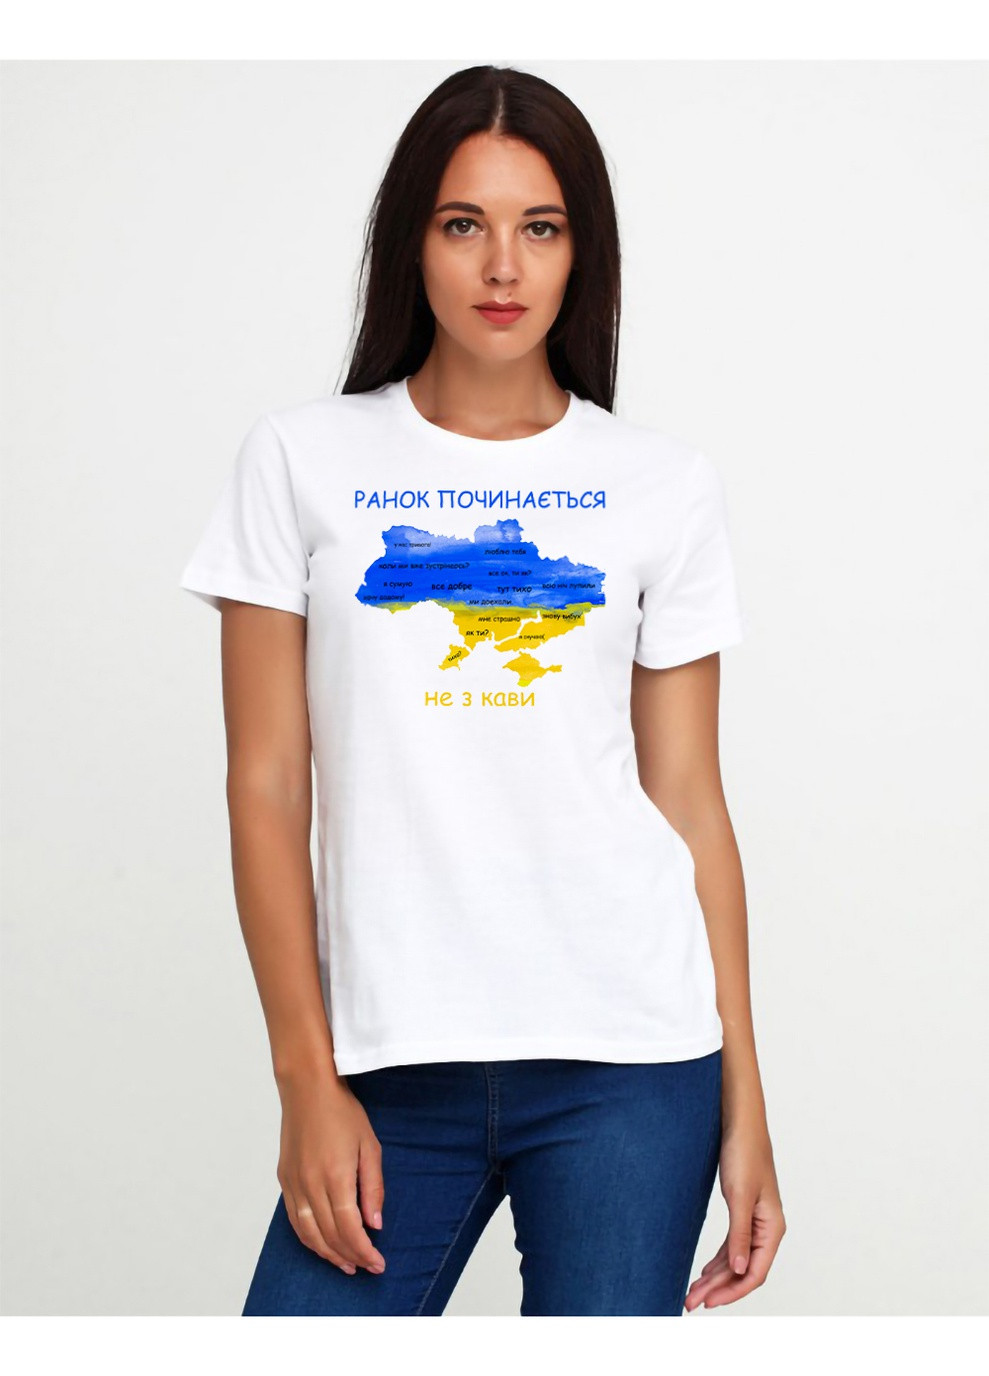 Женская футболка 18Ж425-17-Р2 с патриотическим принтом Malta - (254695244)